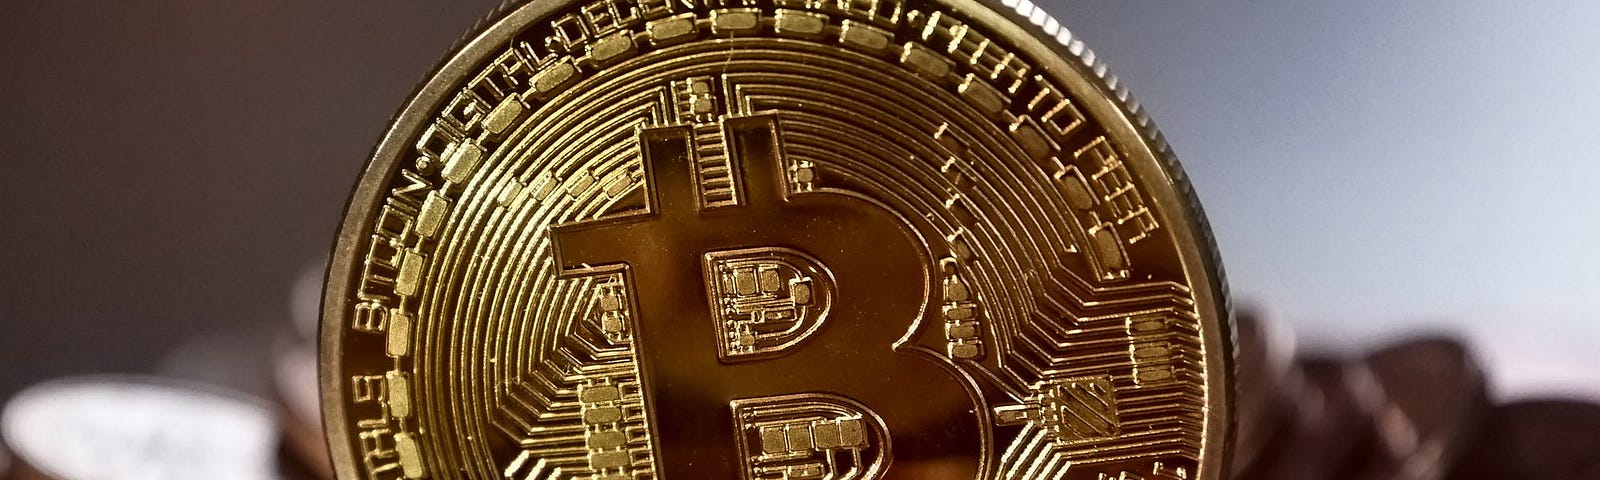 A golden coin representing Bitcoin